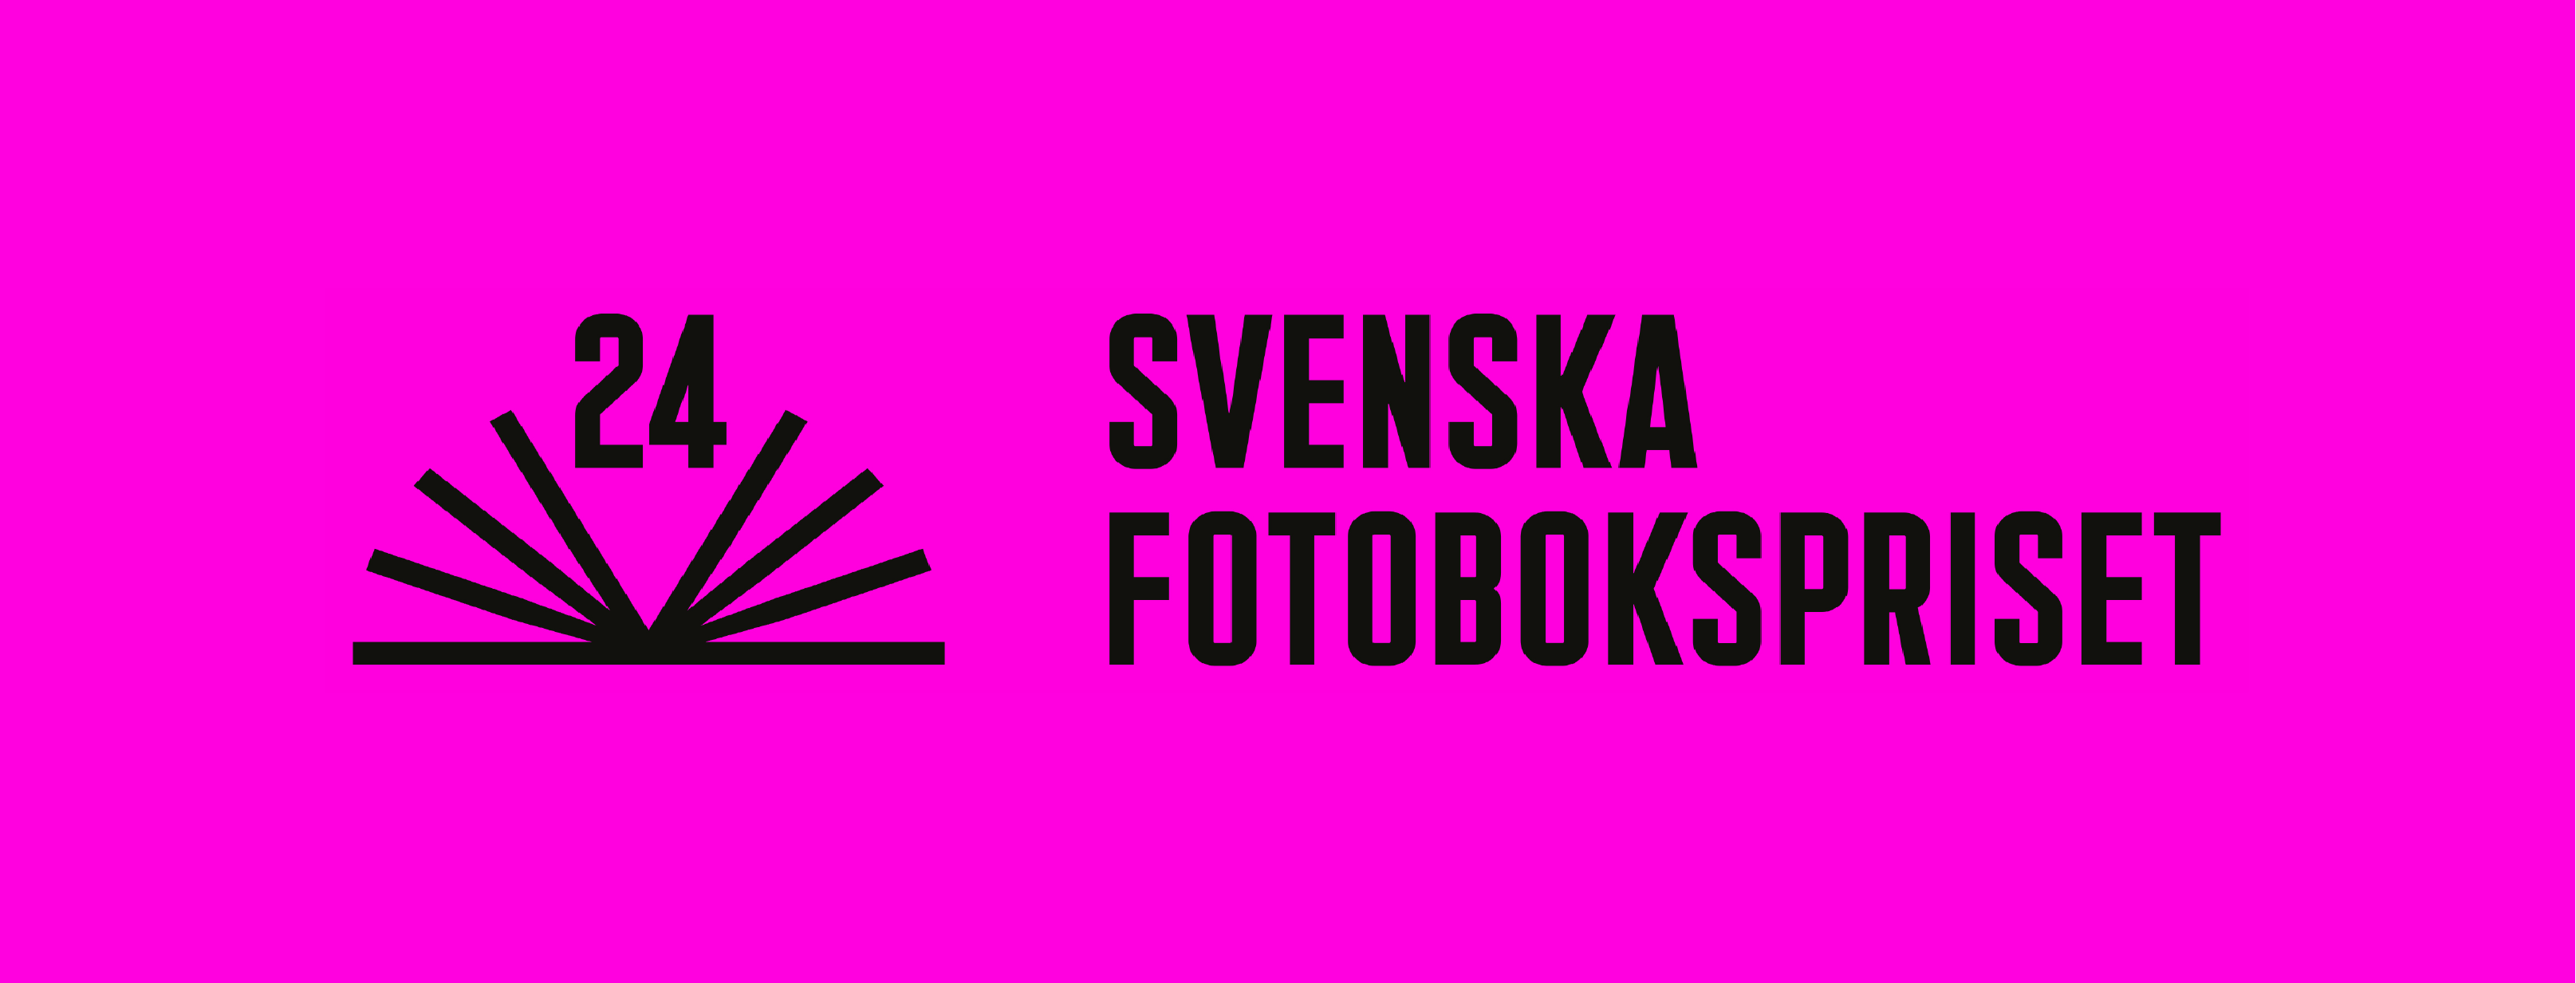 Svenska Fotobokspriset